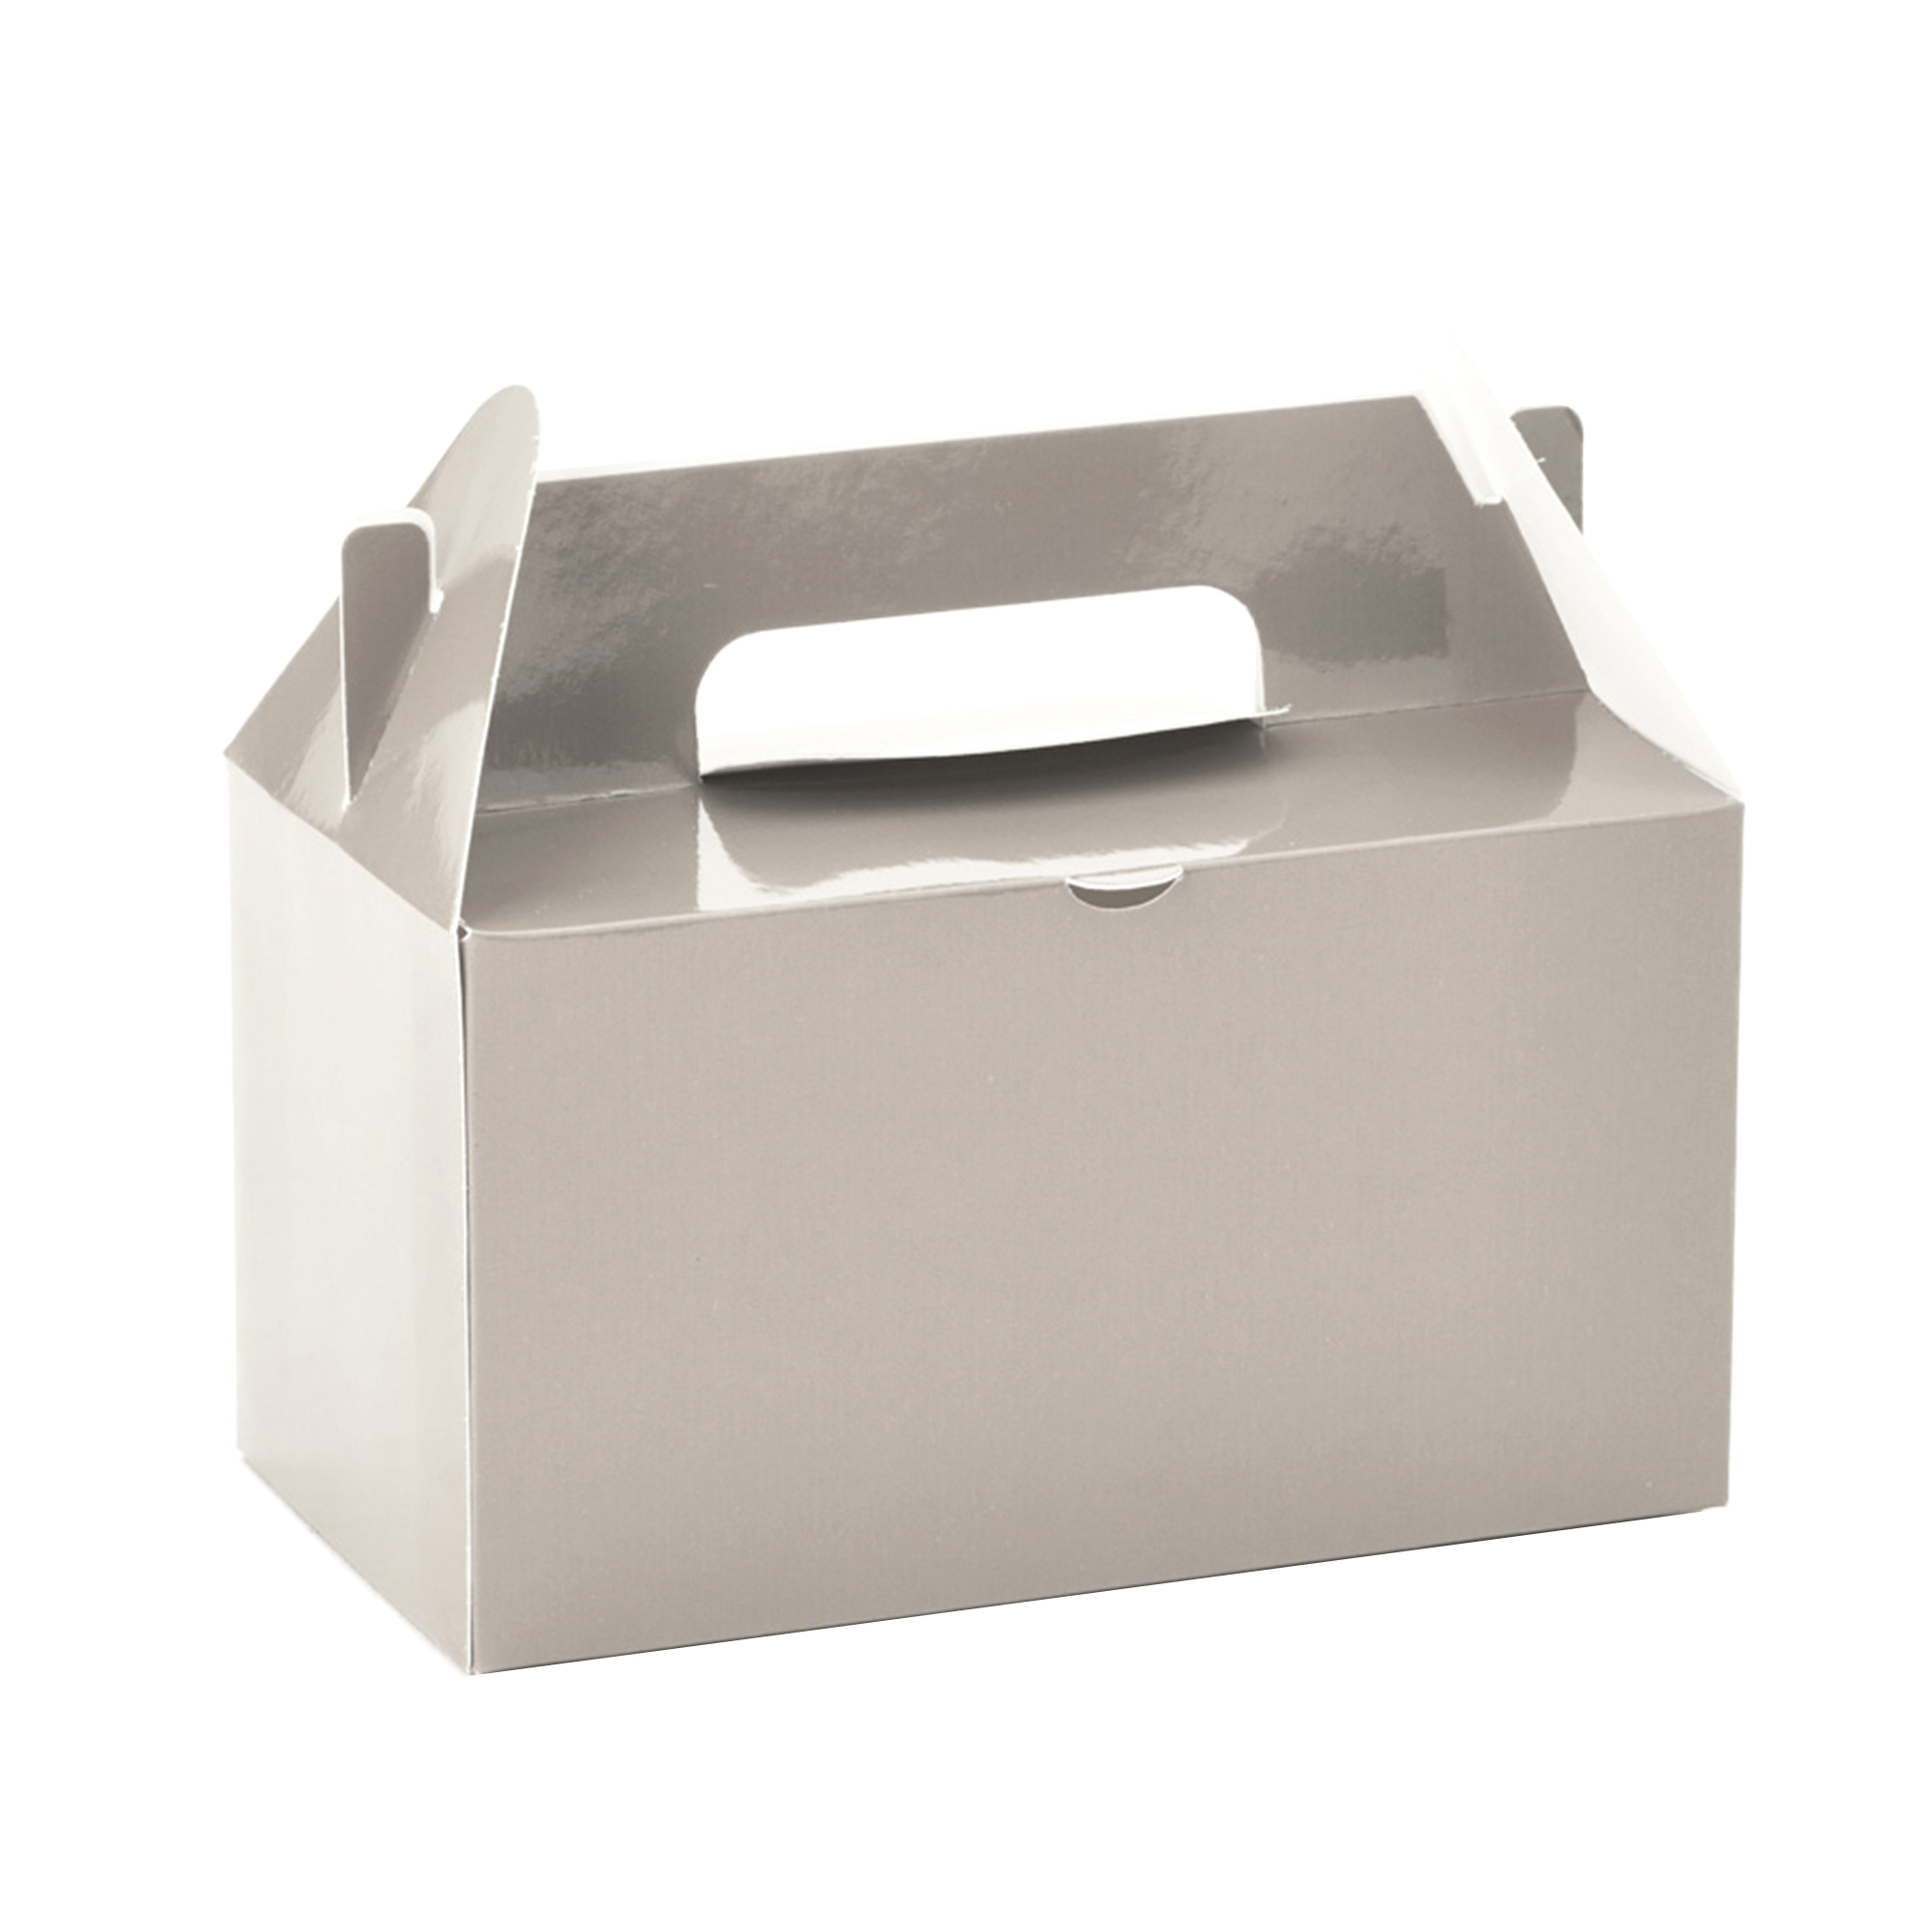 Takeout Box 12pcs/bag - Silver